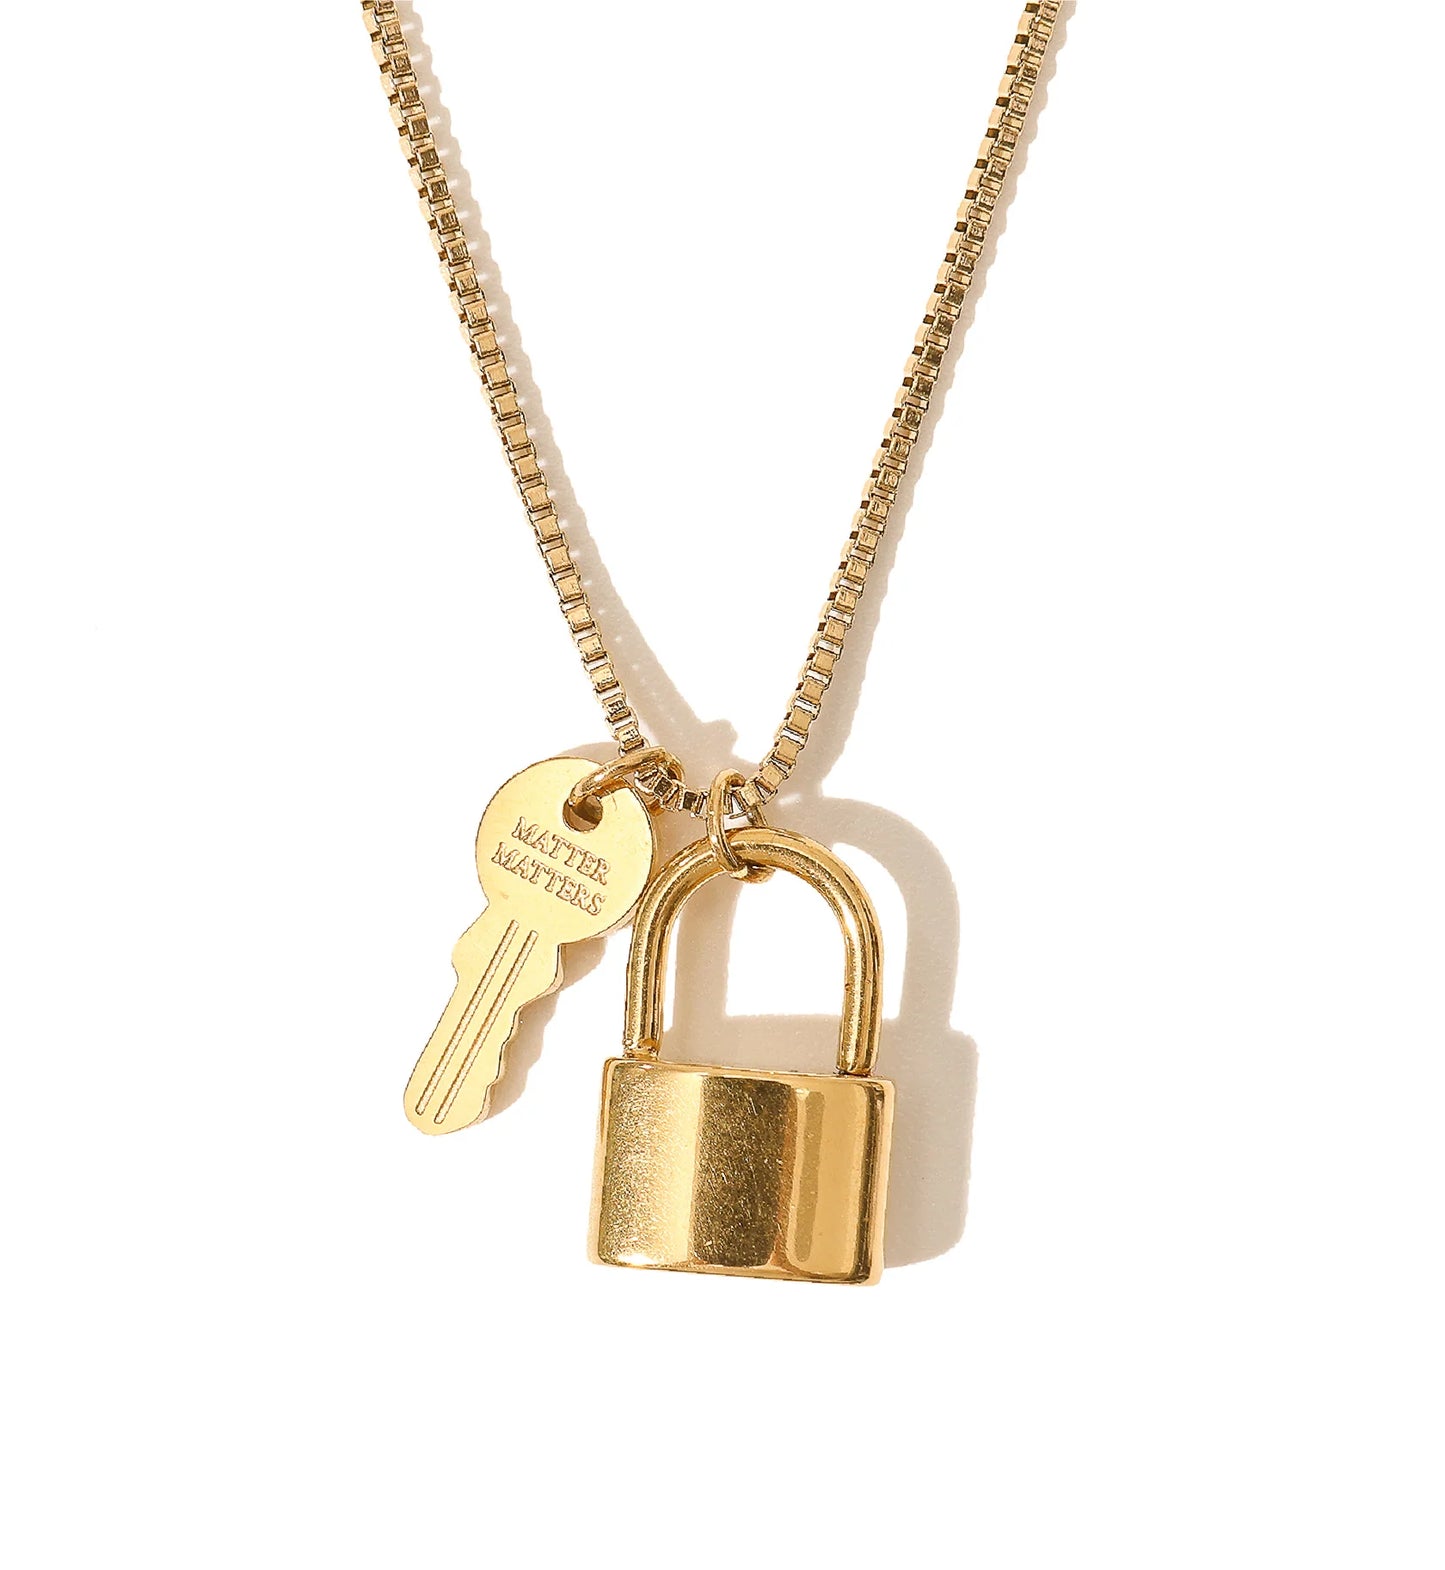 Matter Matters Unlock Secrets Key & Lock Necklace